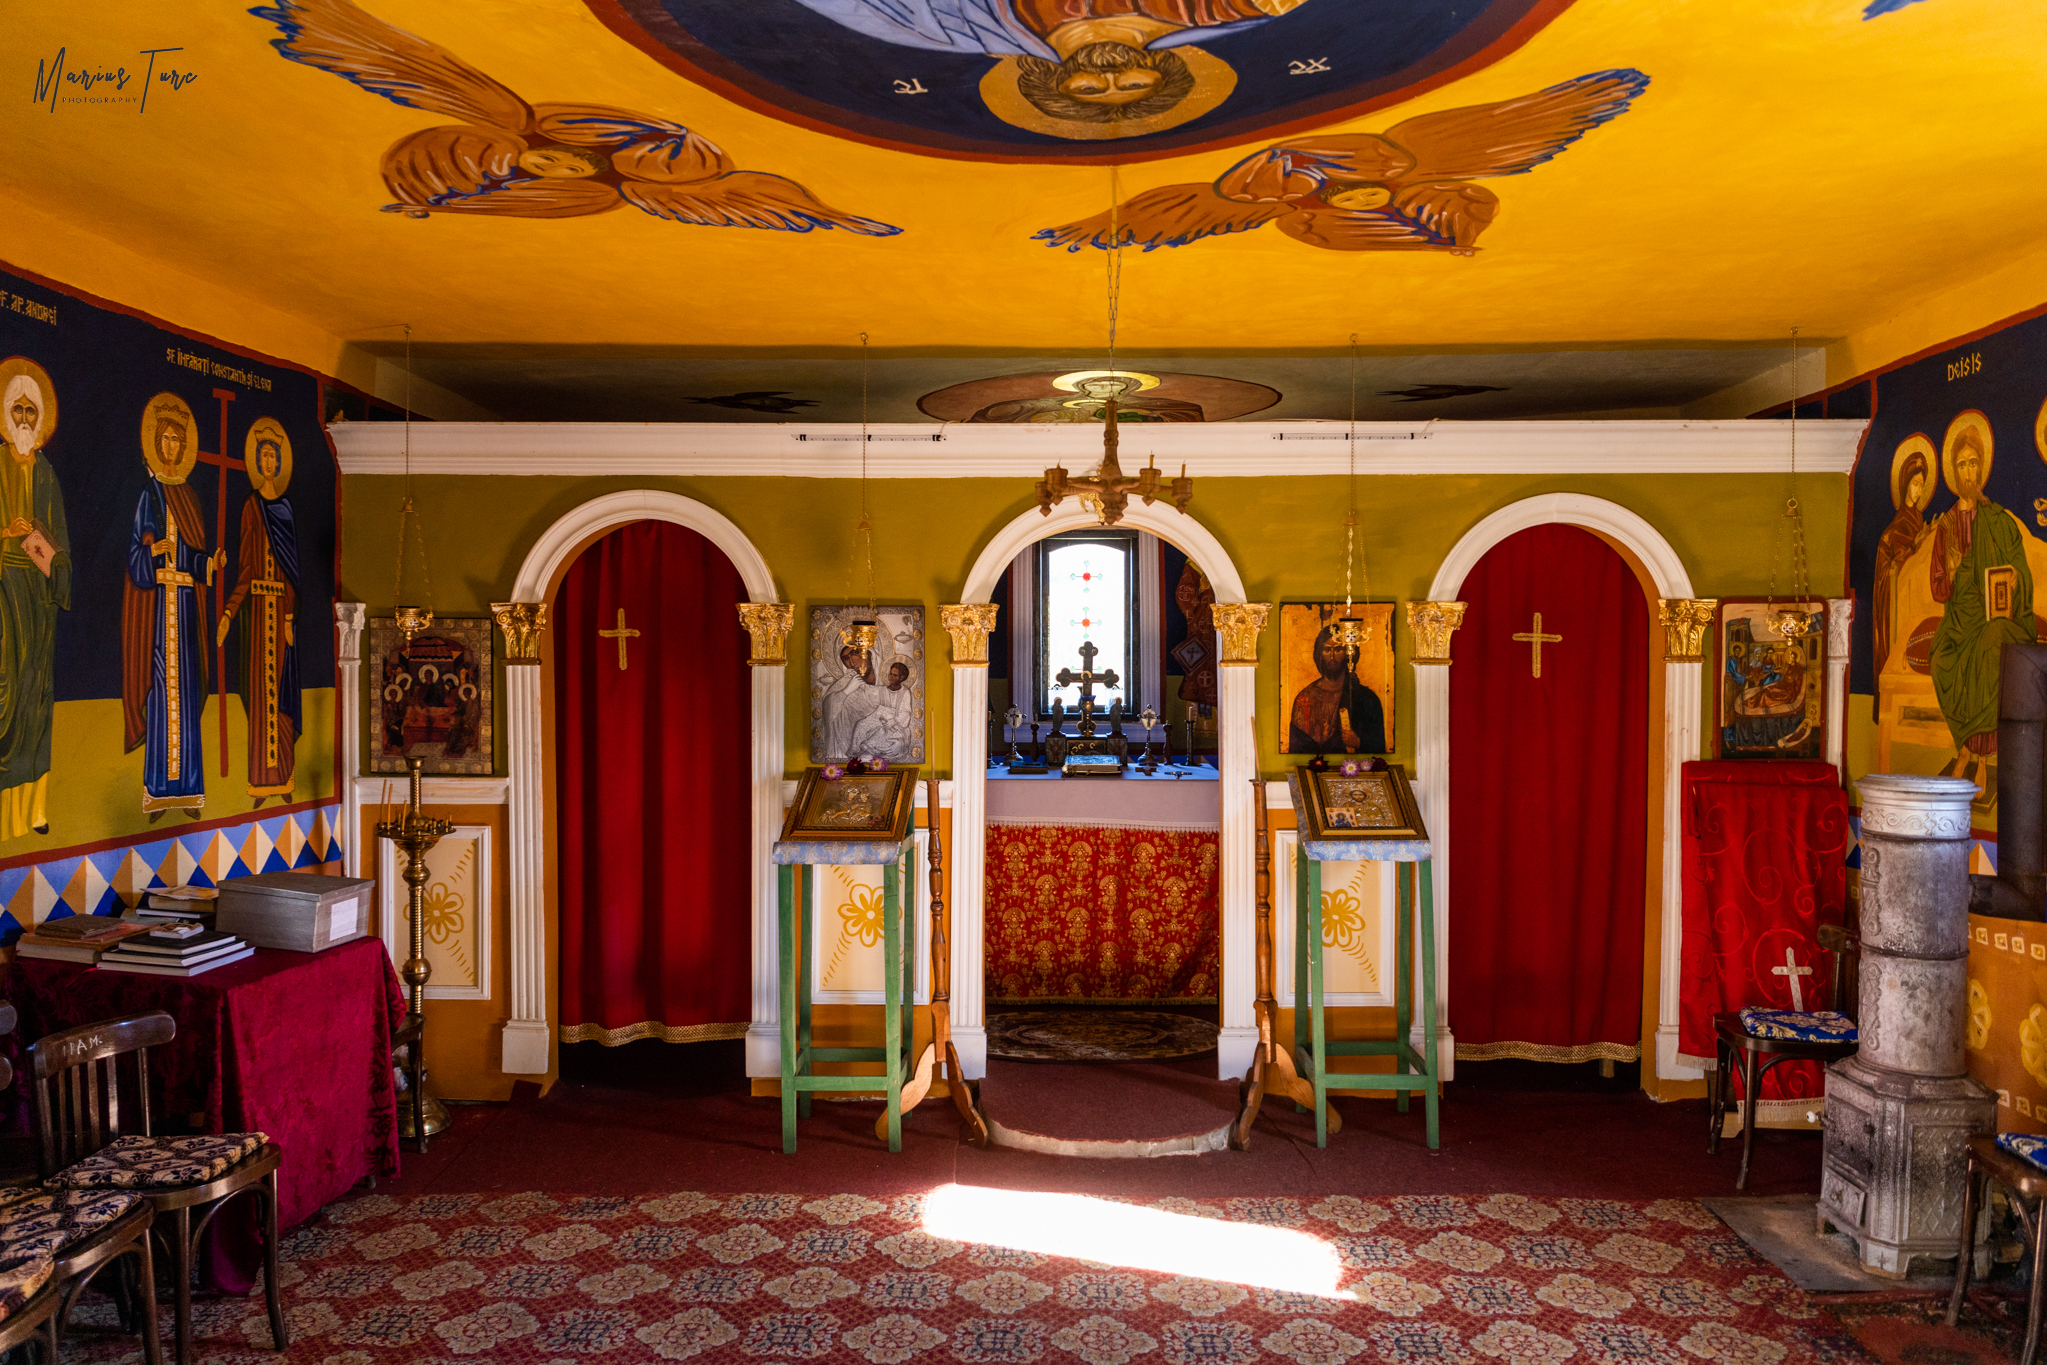  Interior capela bisericuţa de la Ineleţ - Marius Turc